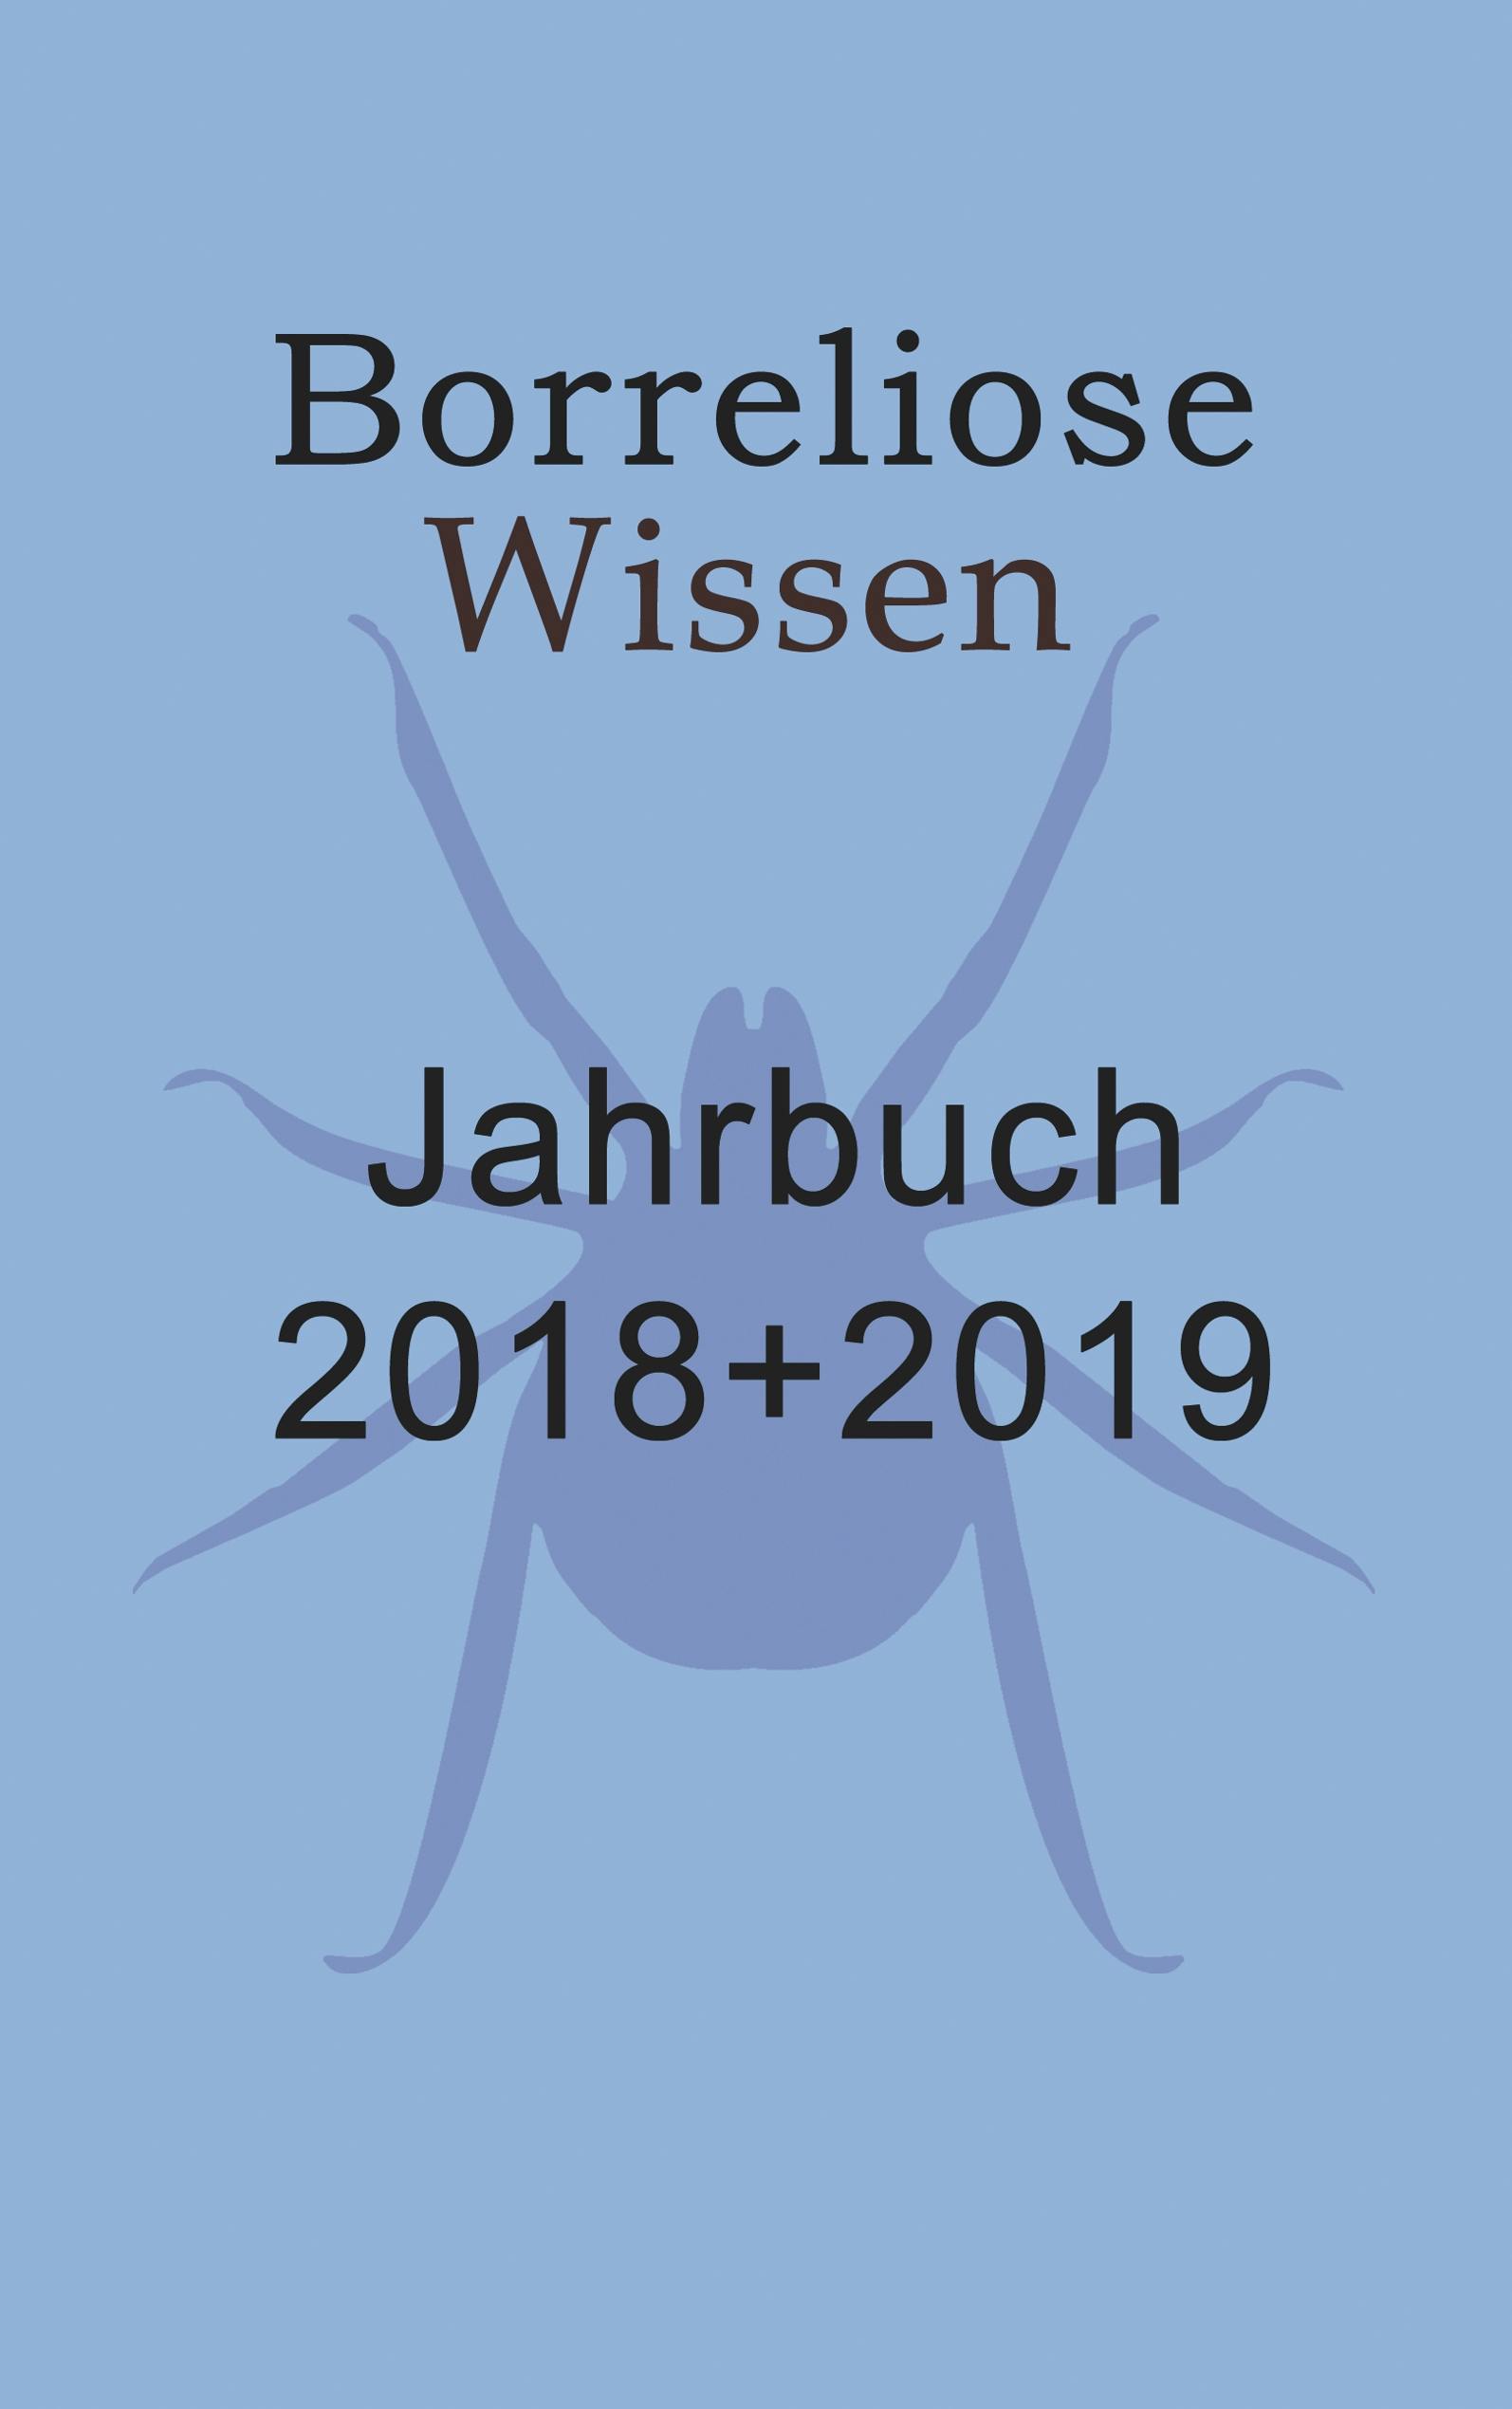 Borreliose Jahrbuch 2018/2019 - Ute Fischer, Bernhard Siegmund